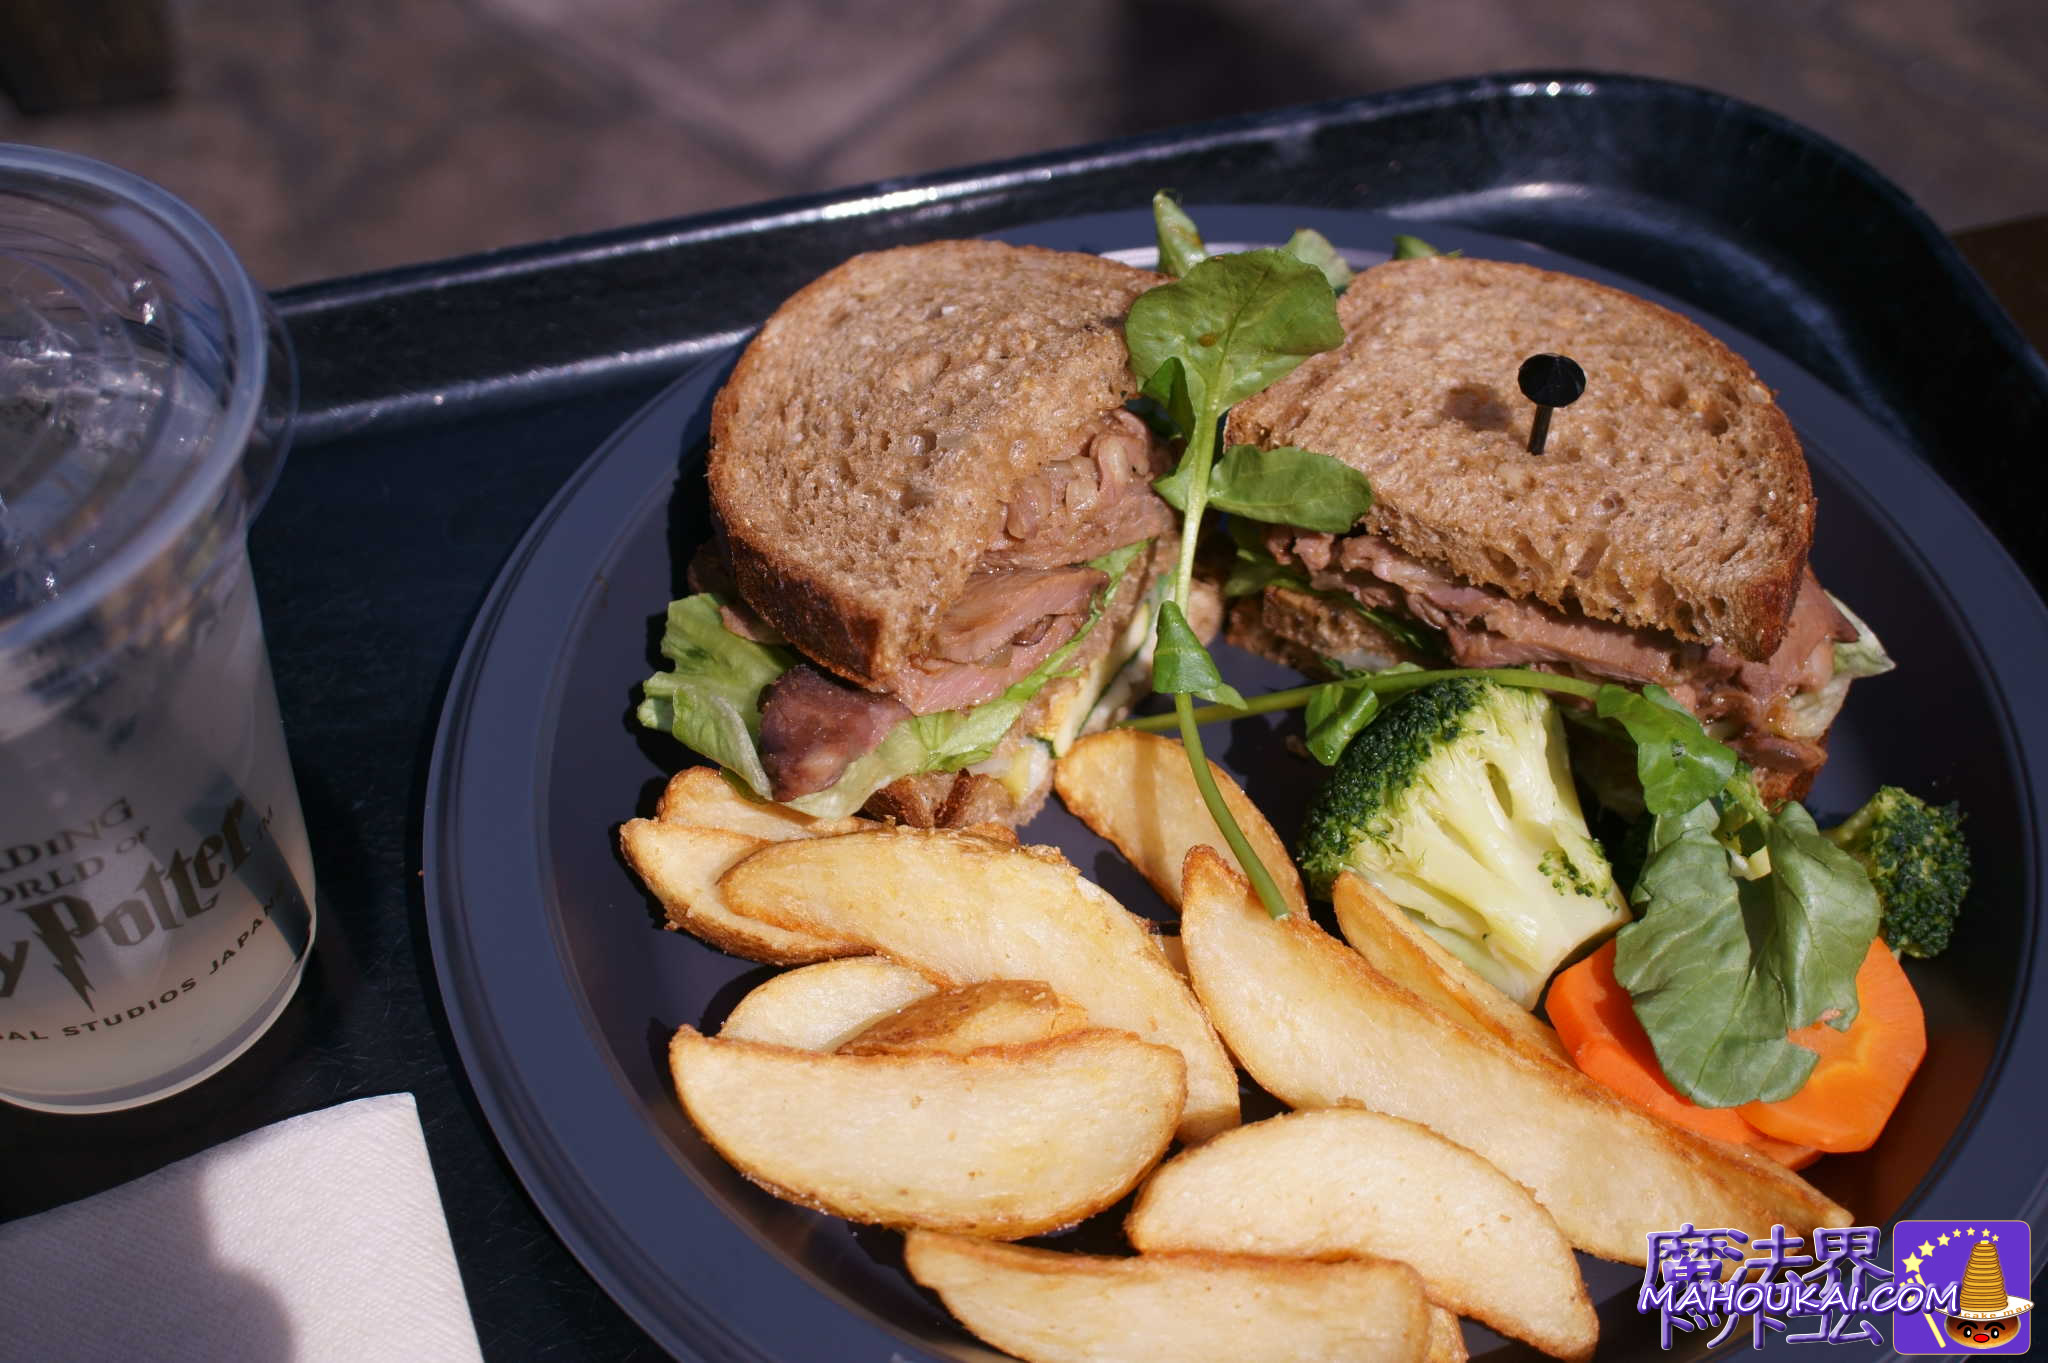 ローストビーフサンド（Roast Beef Sandwich）三本の箒　USJ　ハリー・ポッター　エリア2021年3月新メニュー